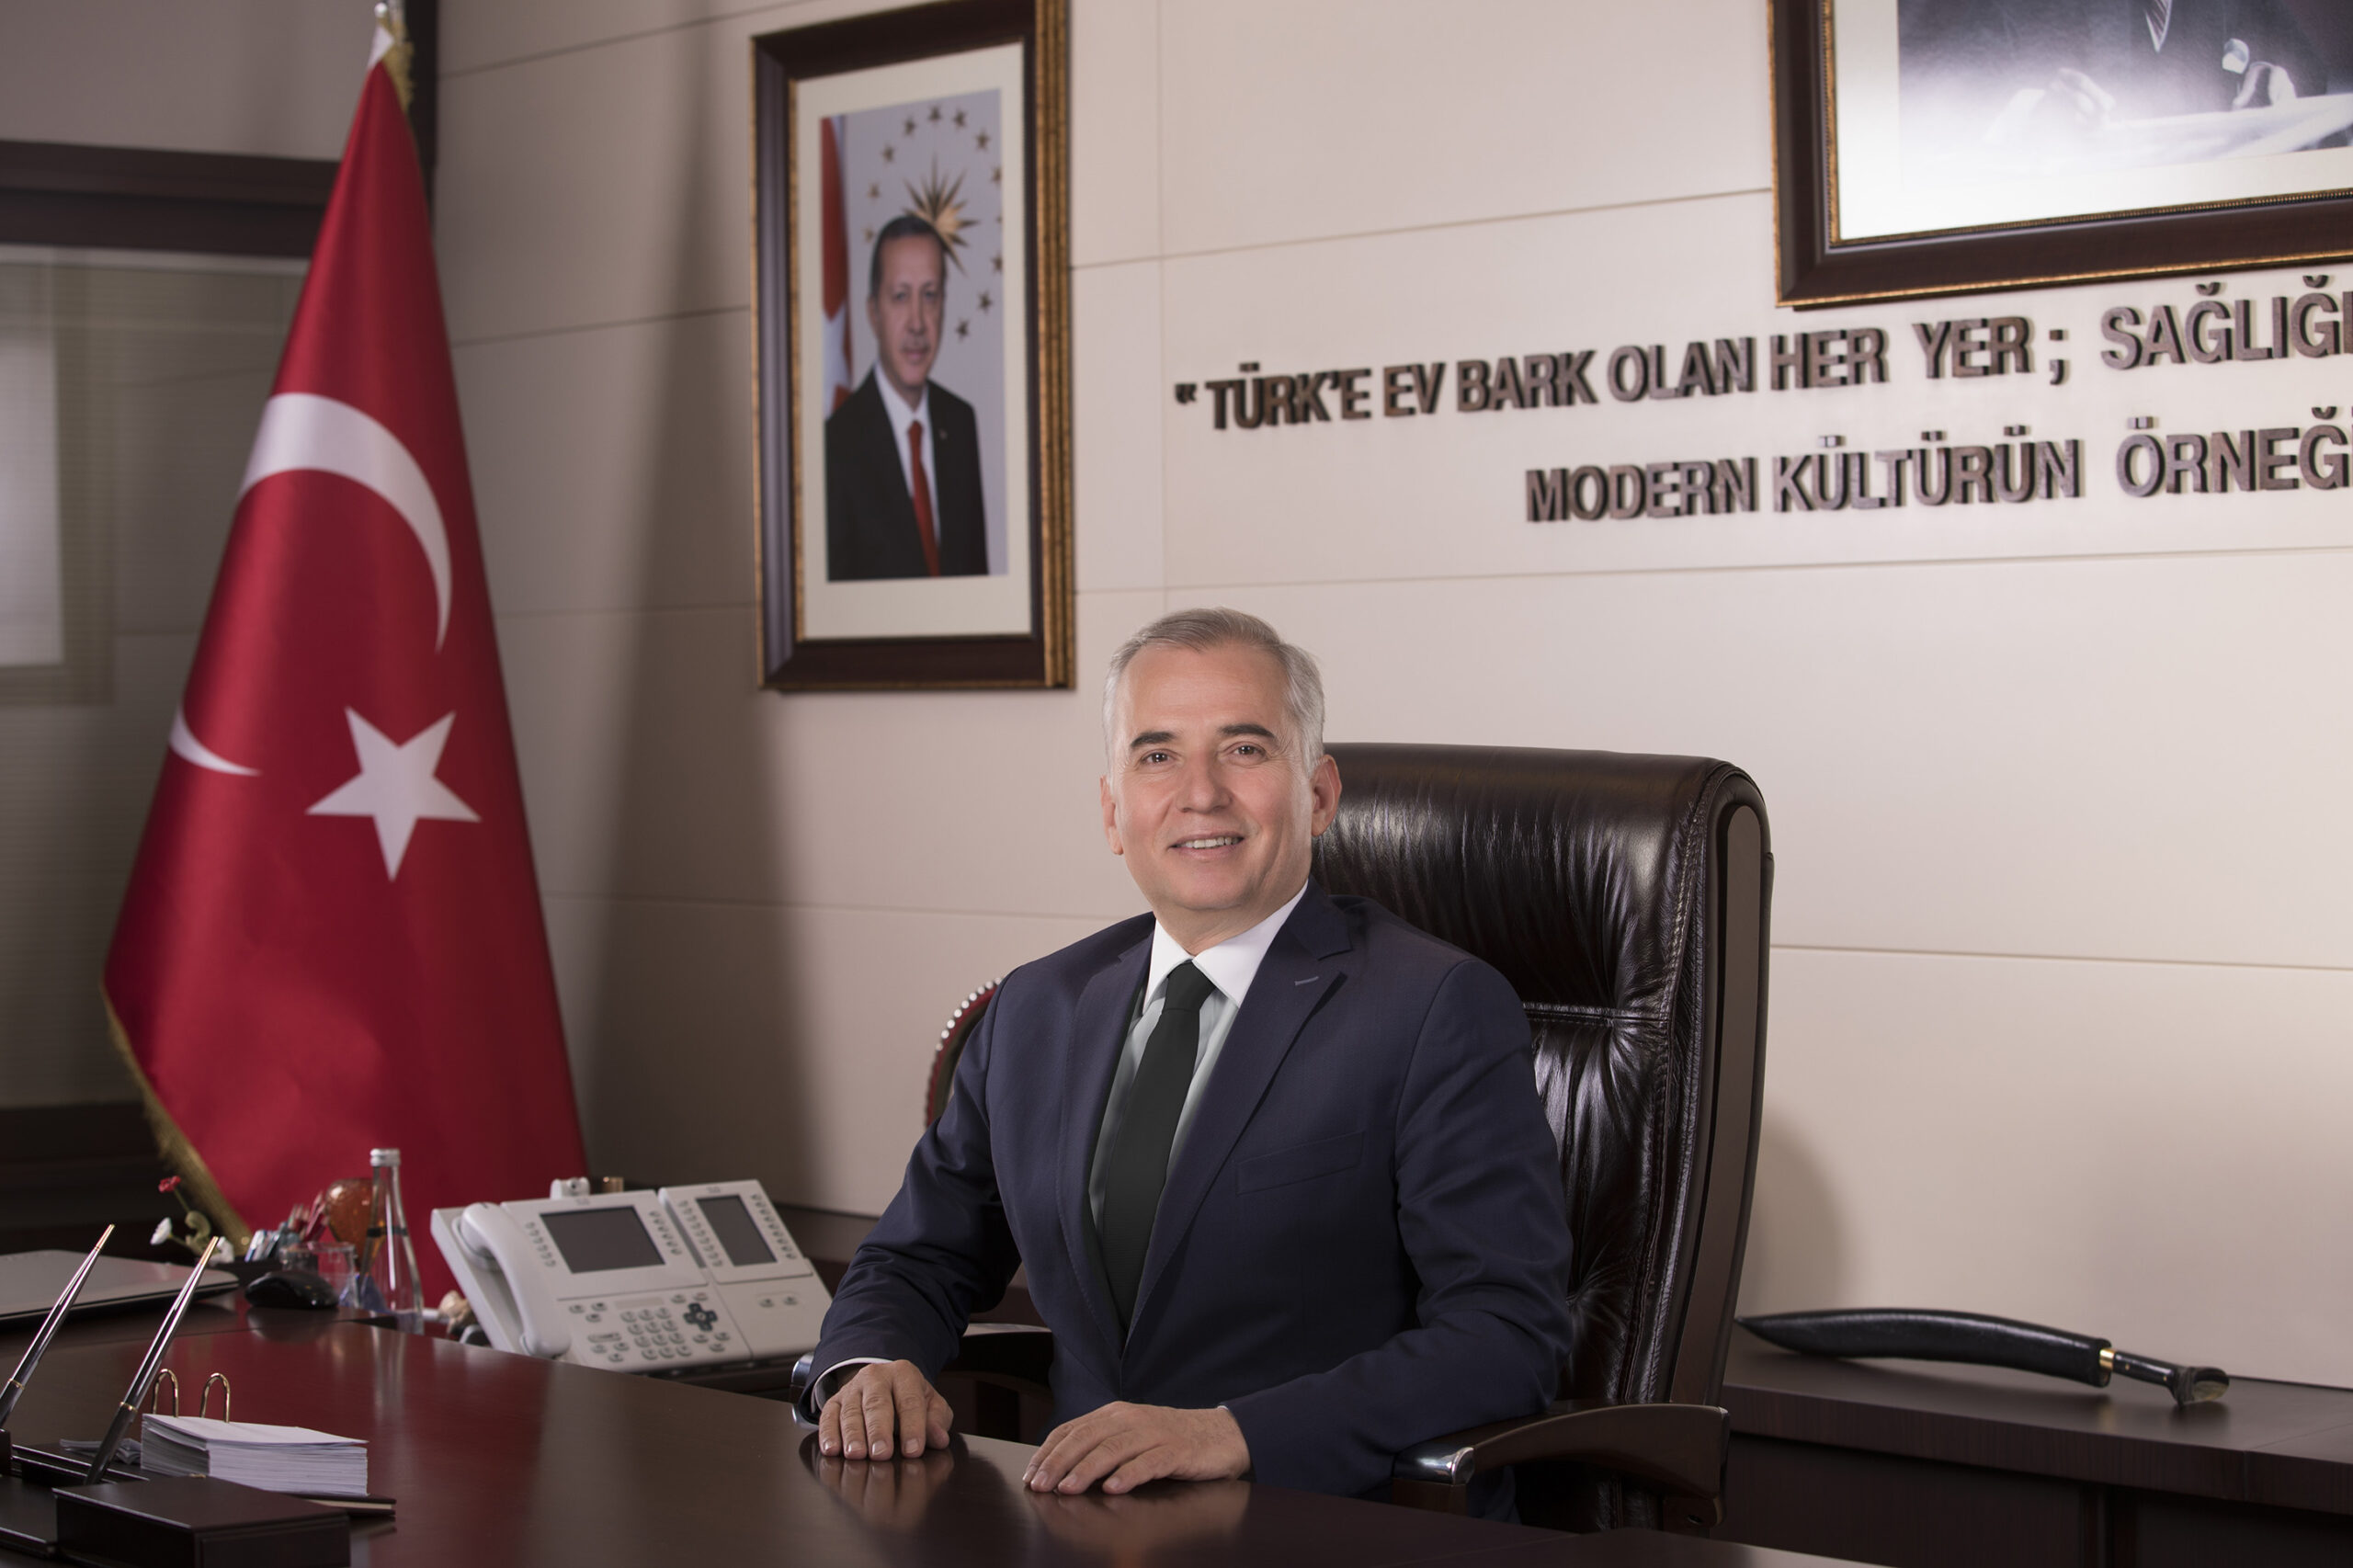 Denizli Buyuksehir Belediye Baskani Osman Zolan scaled - Başkan Zolan: "Türk milleti yedi düvele karşı bir destan yazdı"